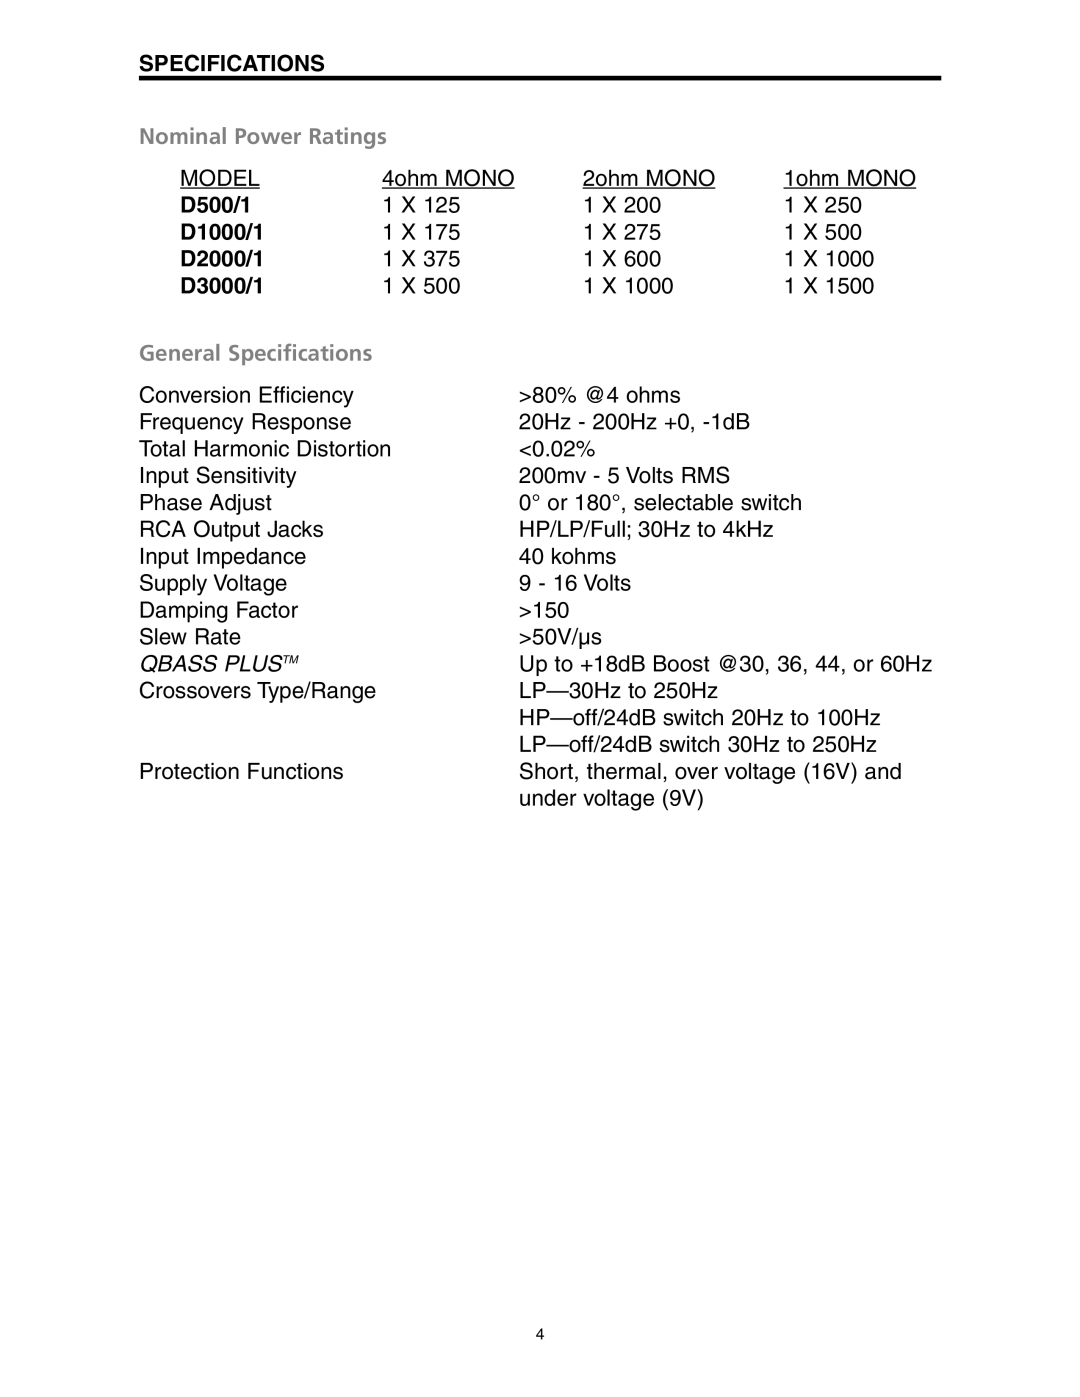 Precision Power D3000/1 manual Nominal Power Ratings, D500/1, D1000/1, D2000/1, General Specifications, Qbass Plustm 